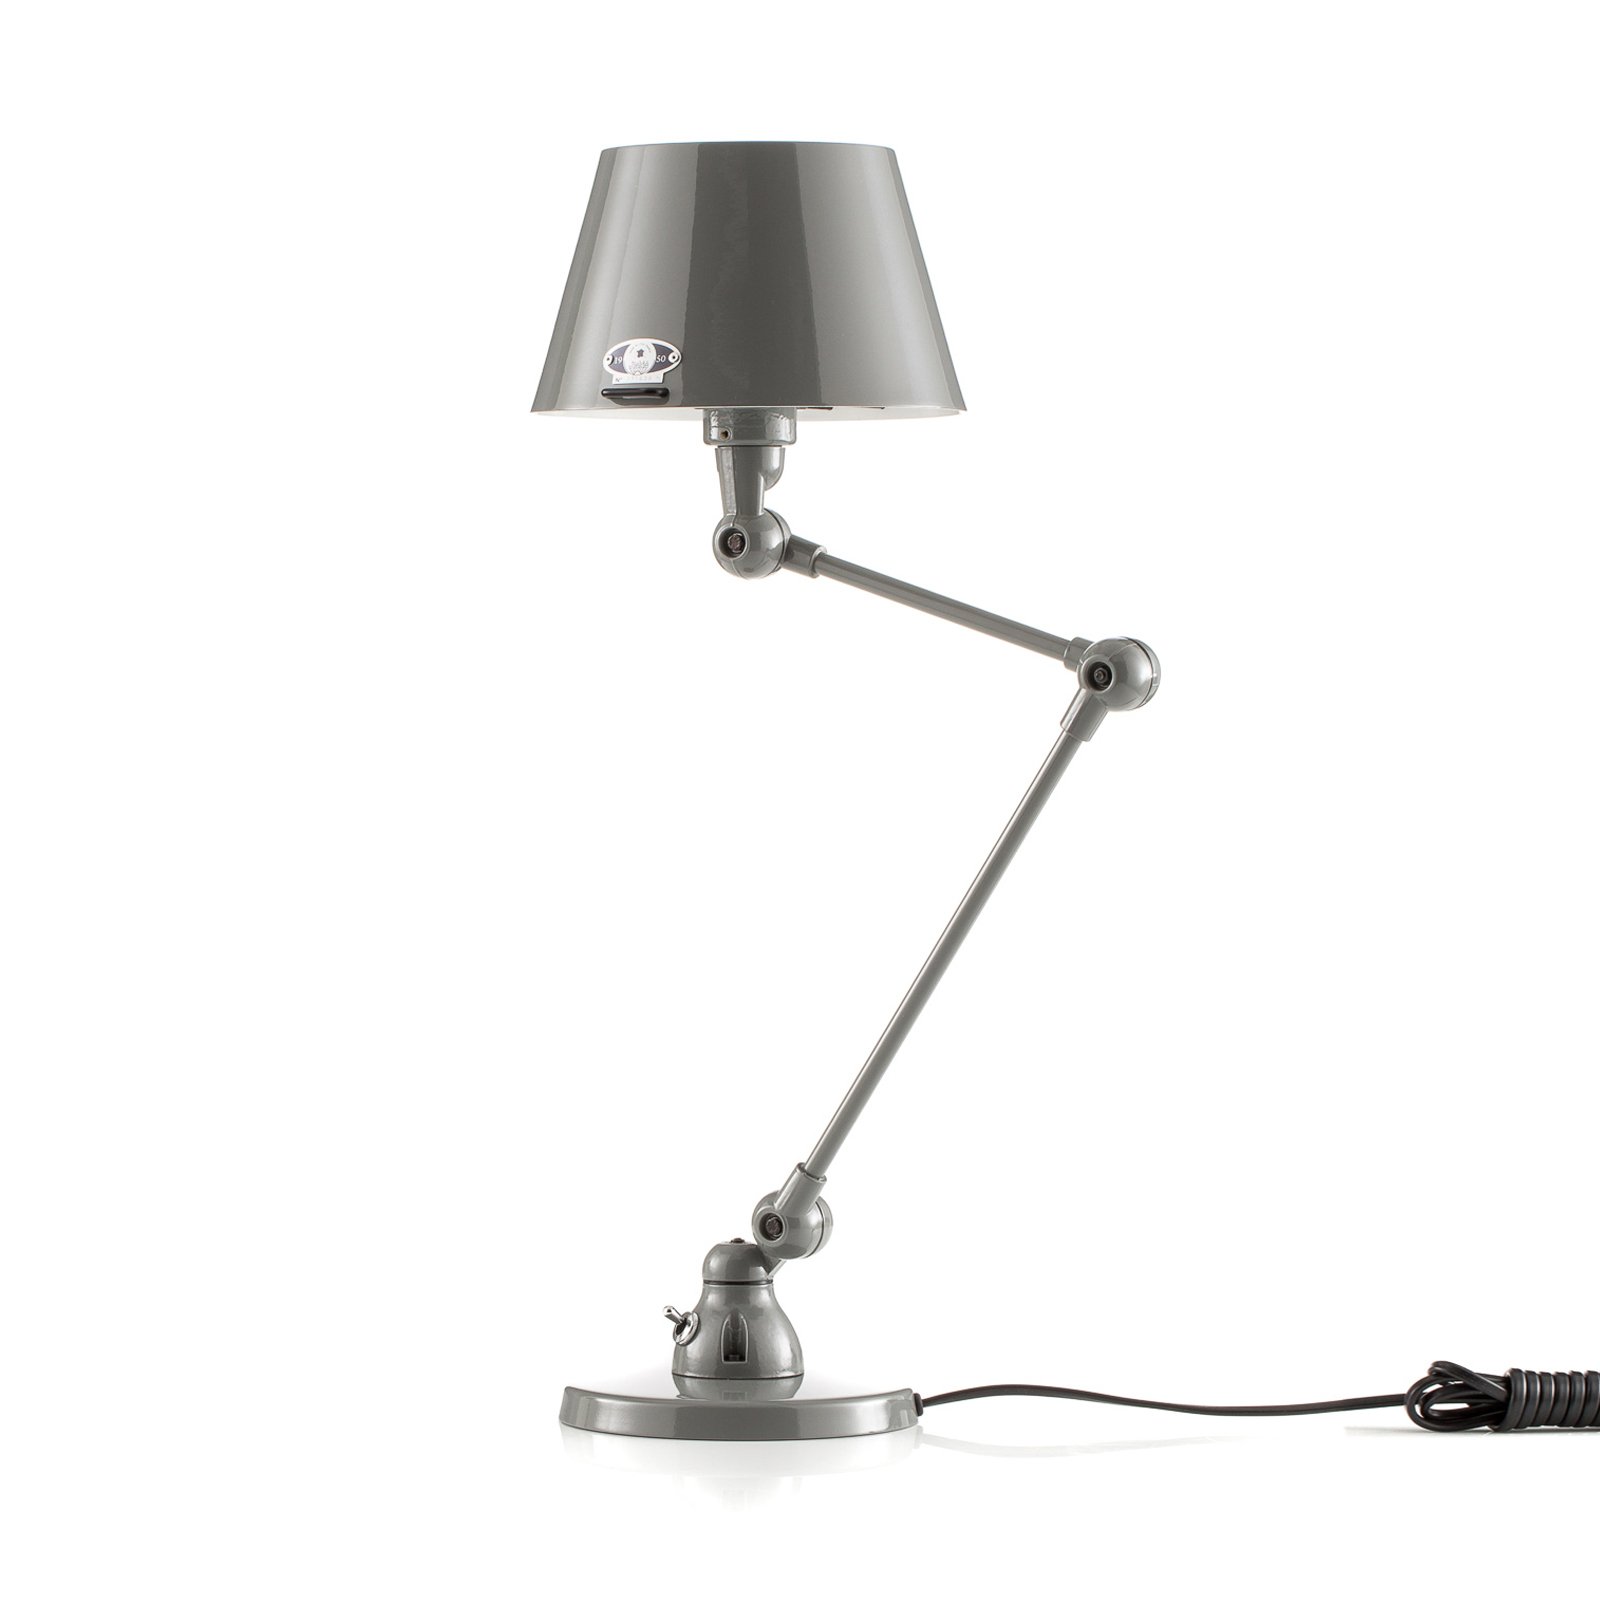 Jieldé Aicler AID373 table lamp, grey